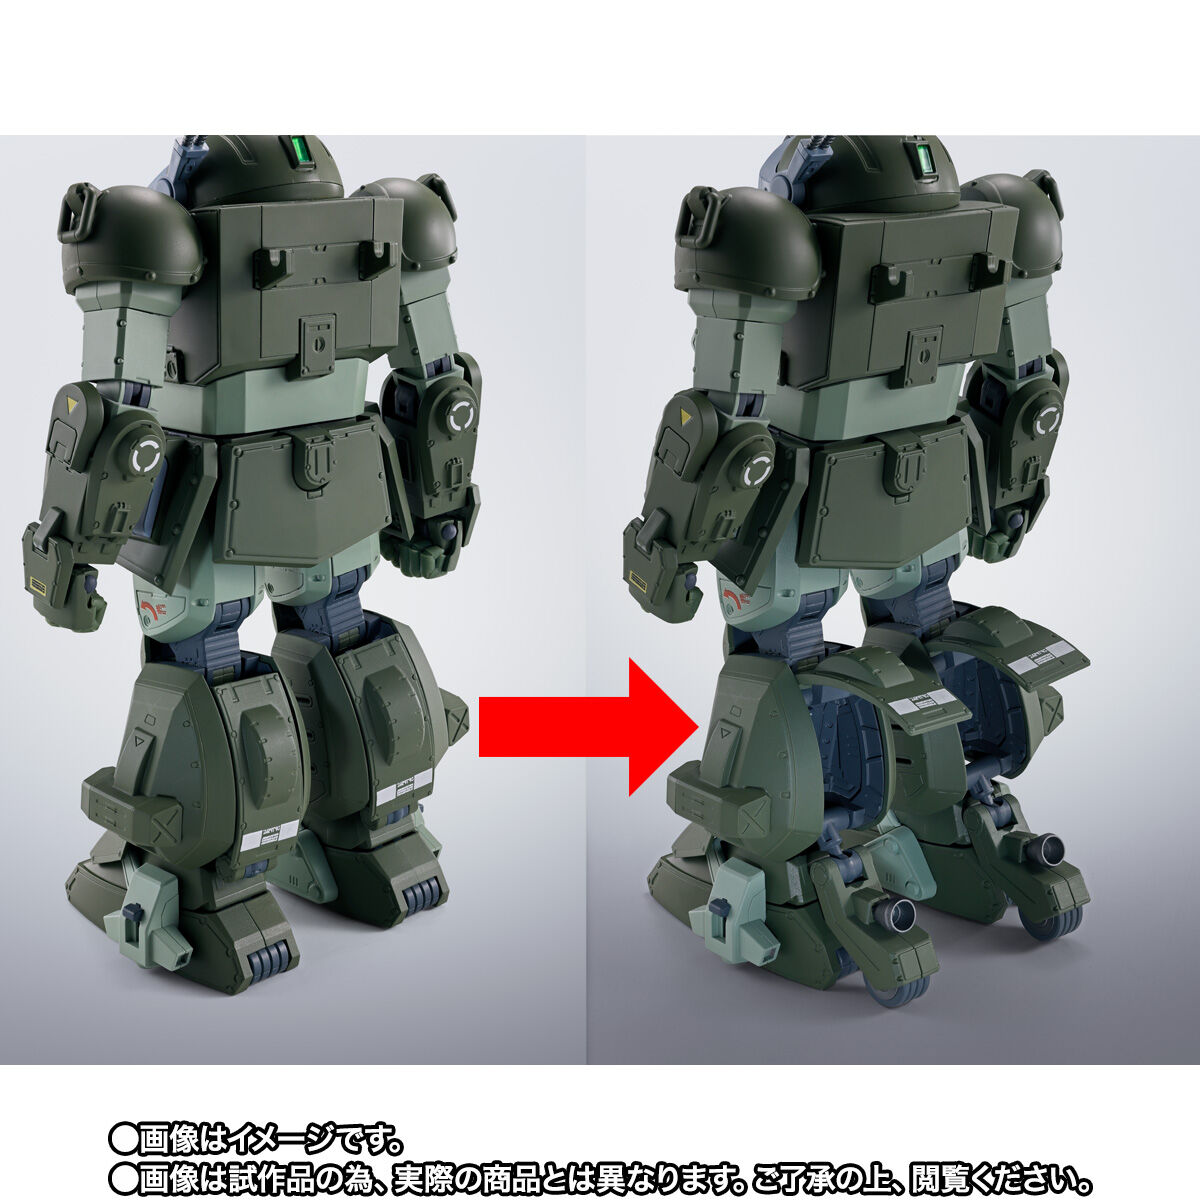 【限定販売】HI-METAL R『スコープドッグ ターボカスタム』装甲騎兵ボトムズ 可動フィギュア-006